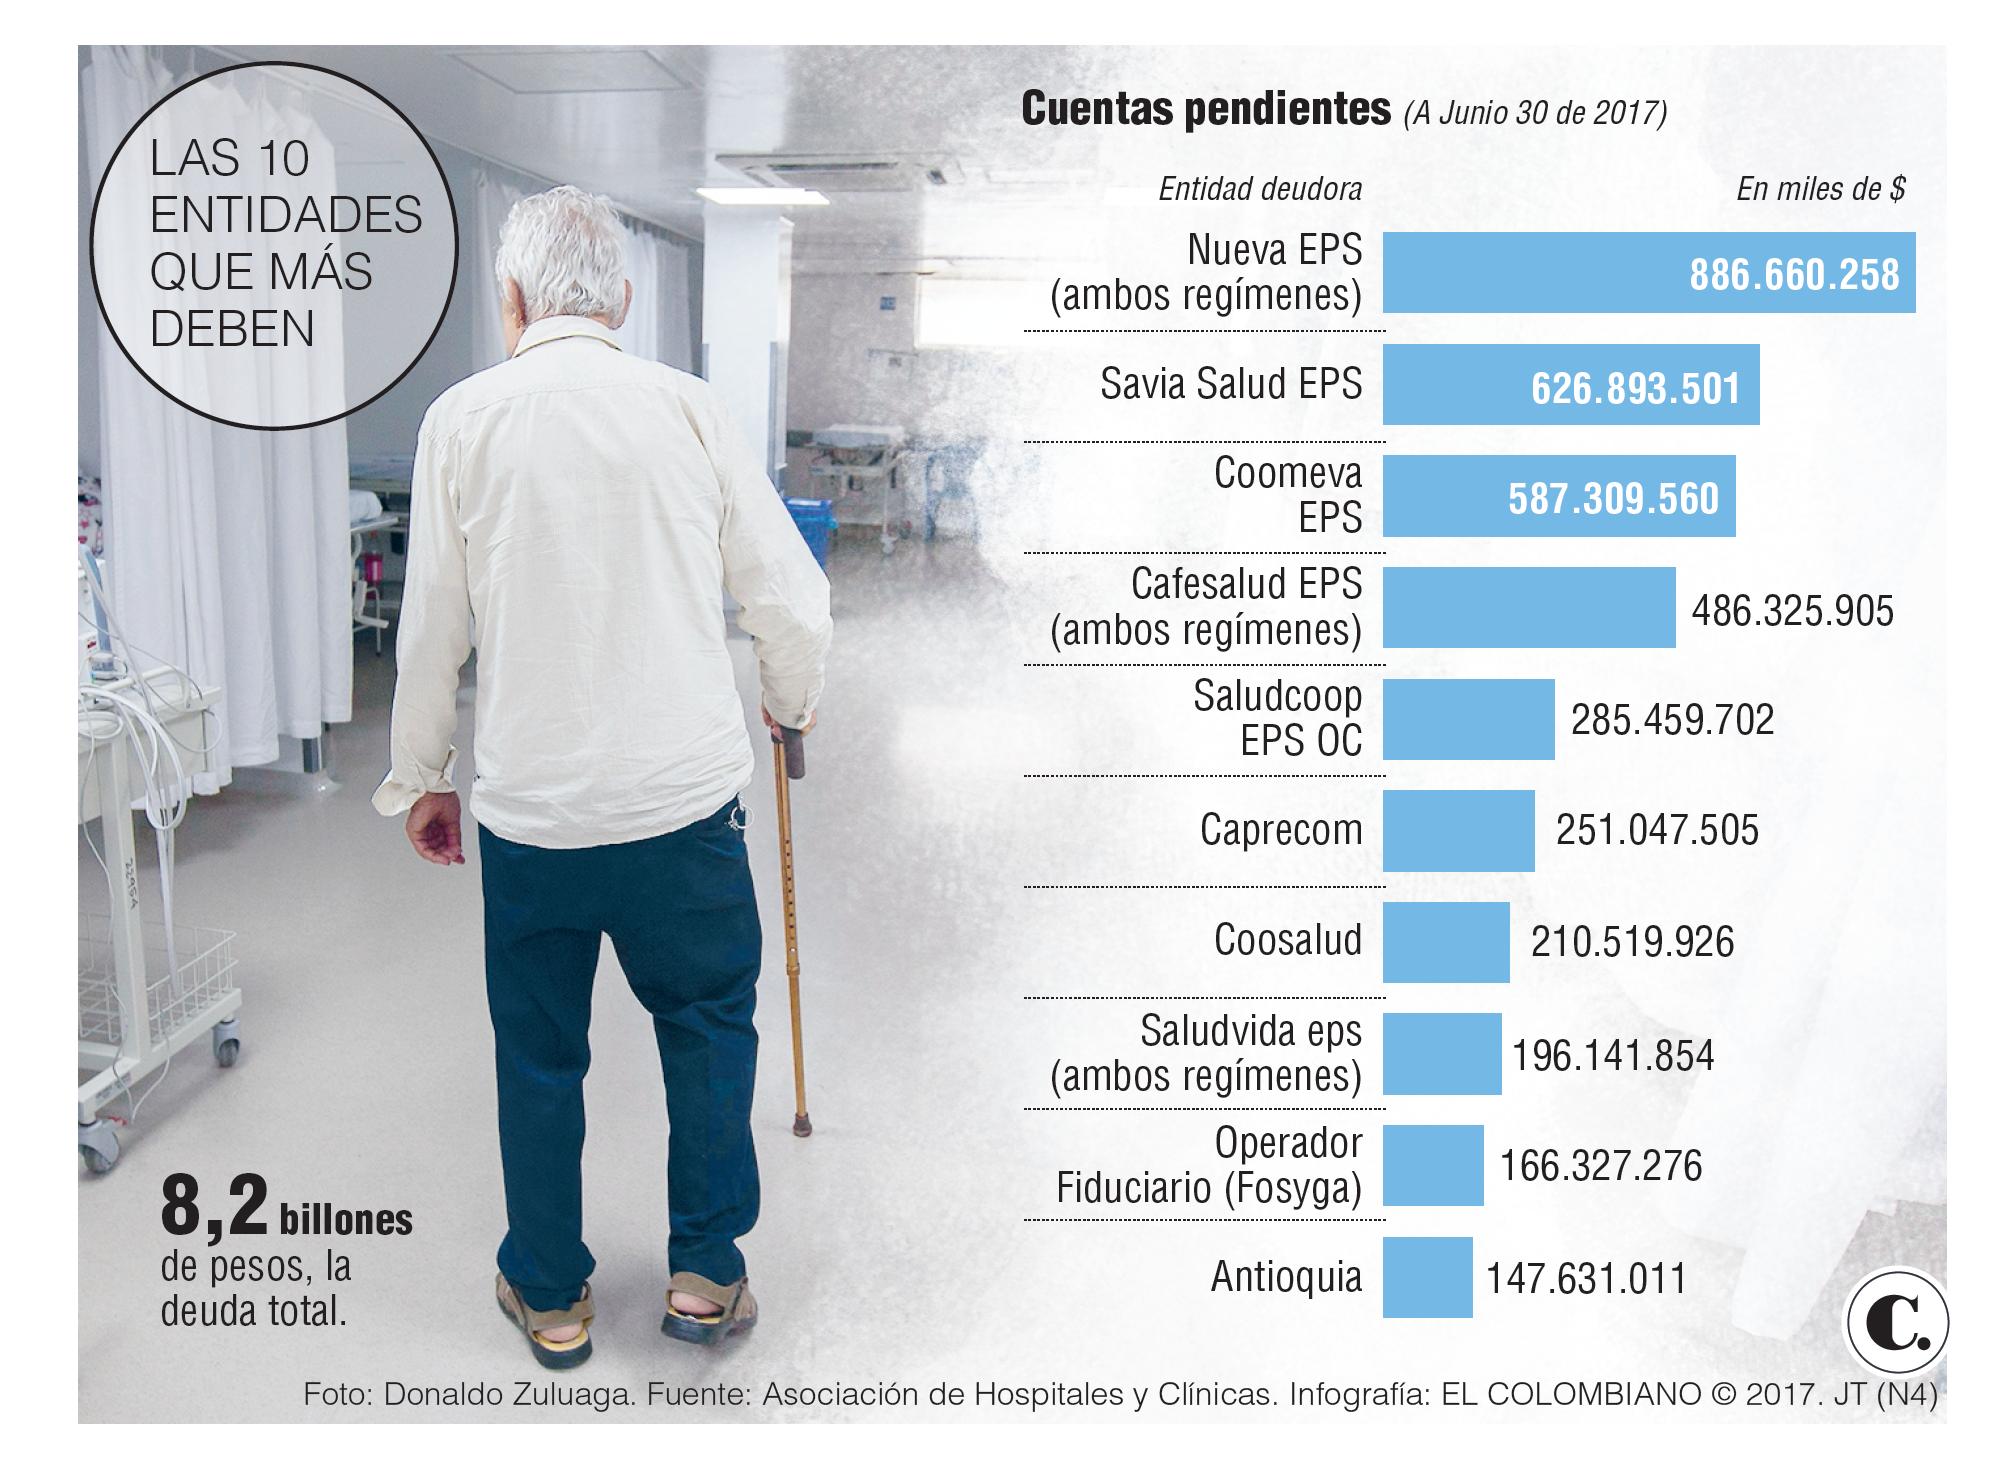 8,2 billones de pesos, la deuda que asfixia los hospitales de Colombia